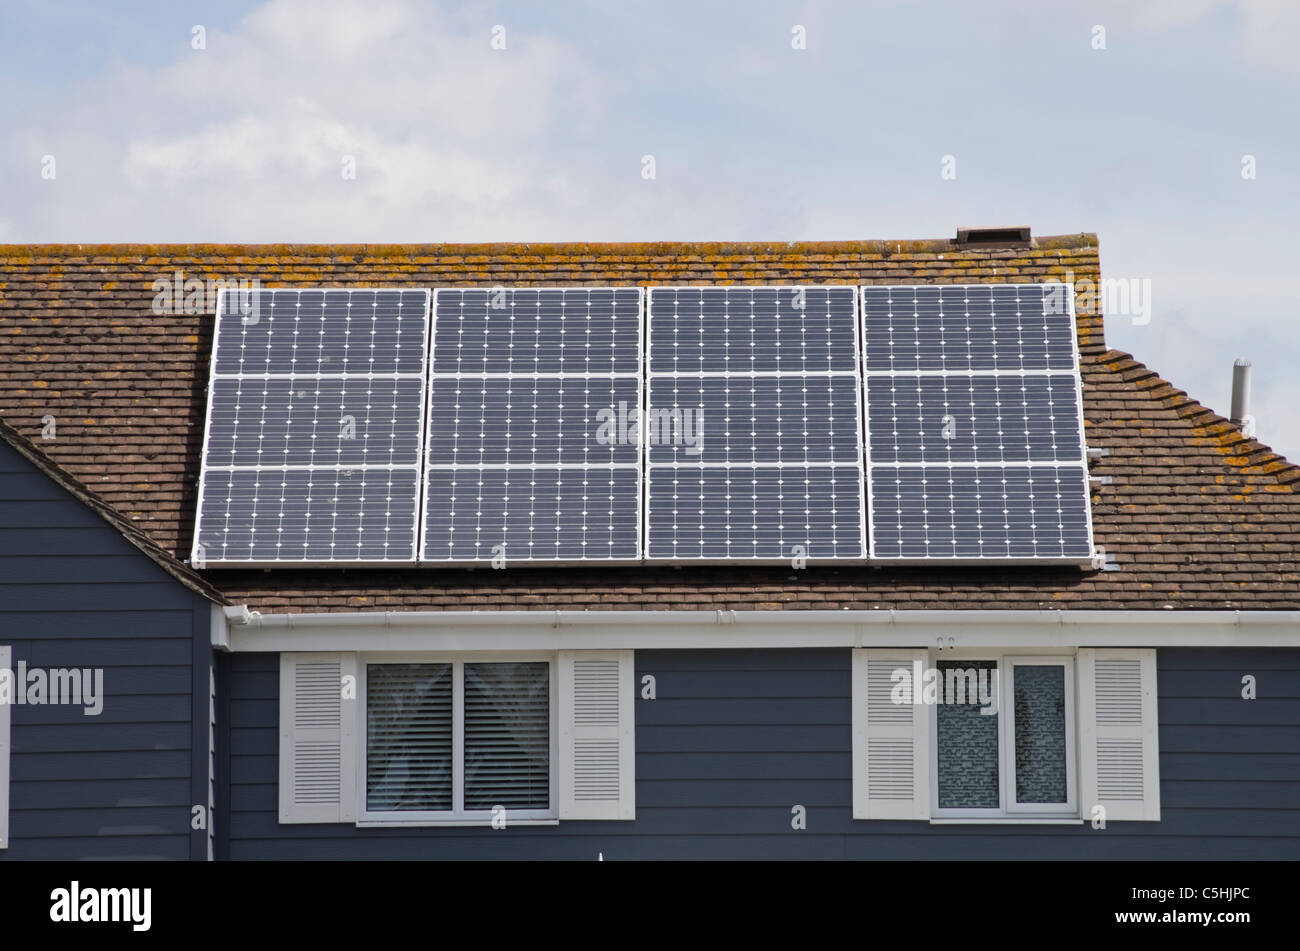 Zwölf Photovoltaik Solar Panels auf eine energieeffiziente Eco home haus dach Wohn- eigentum. West Sussex, England, Großbritannien, Großbritannien Stockfoto